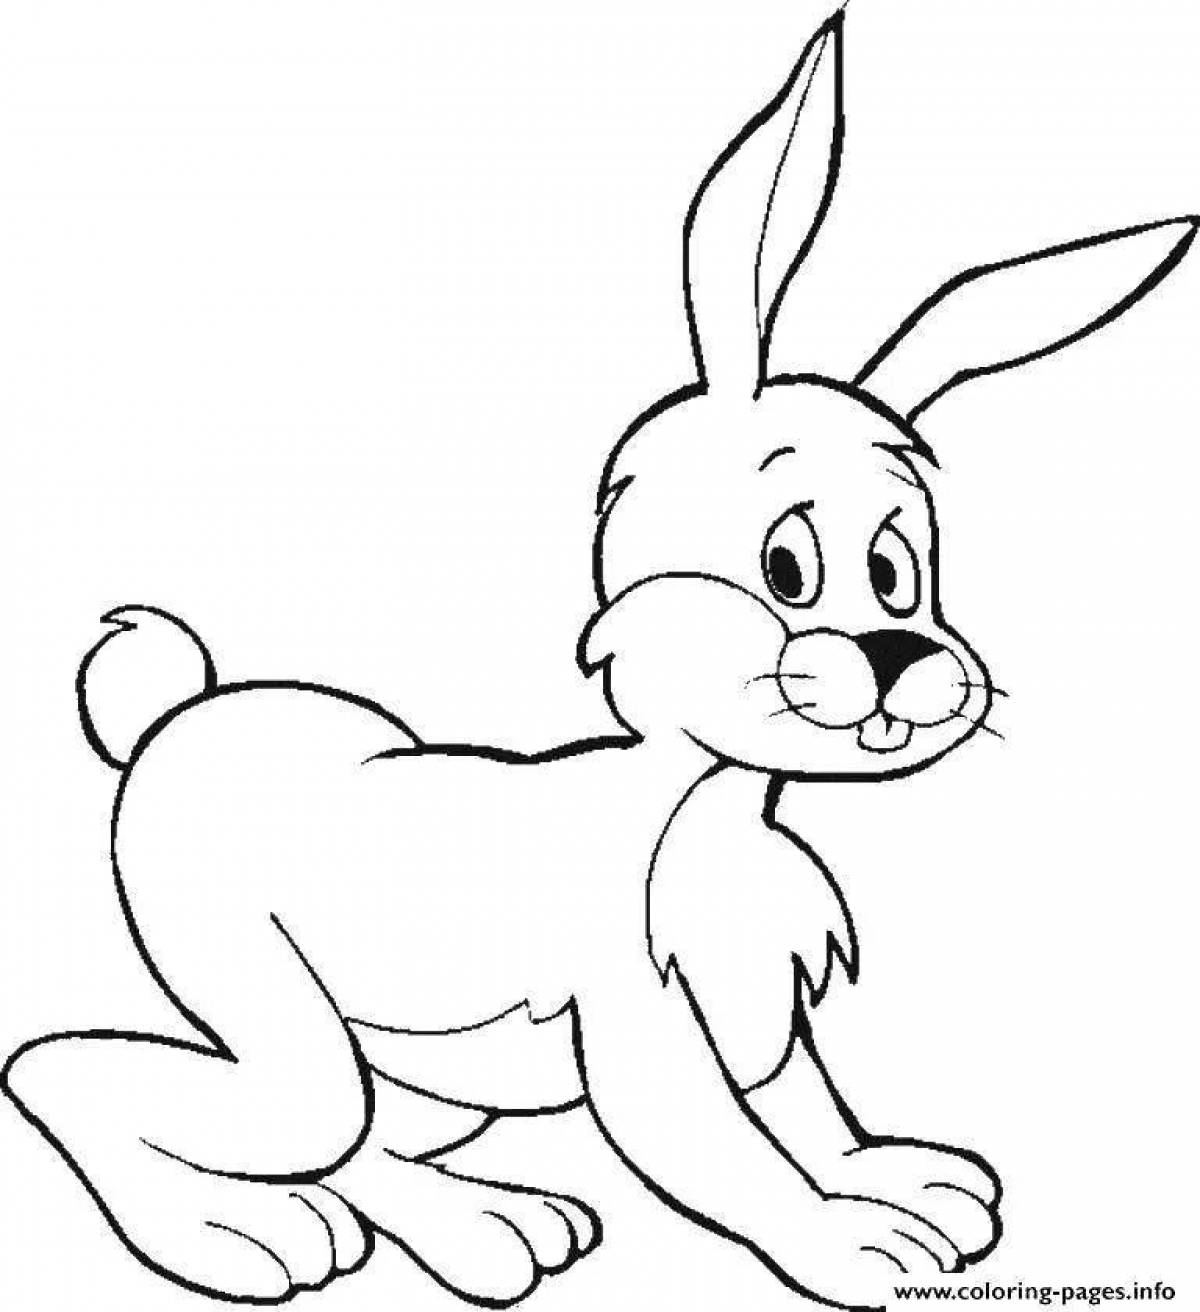 Волшебная раскраска рисунок зайца для детей